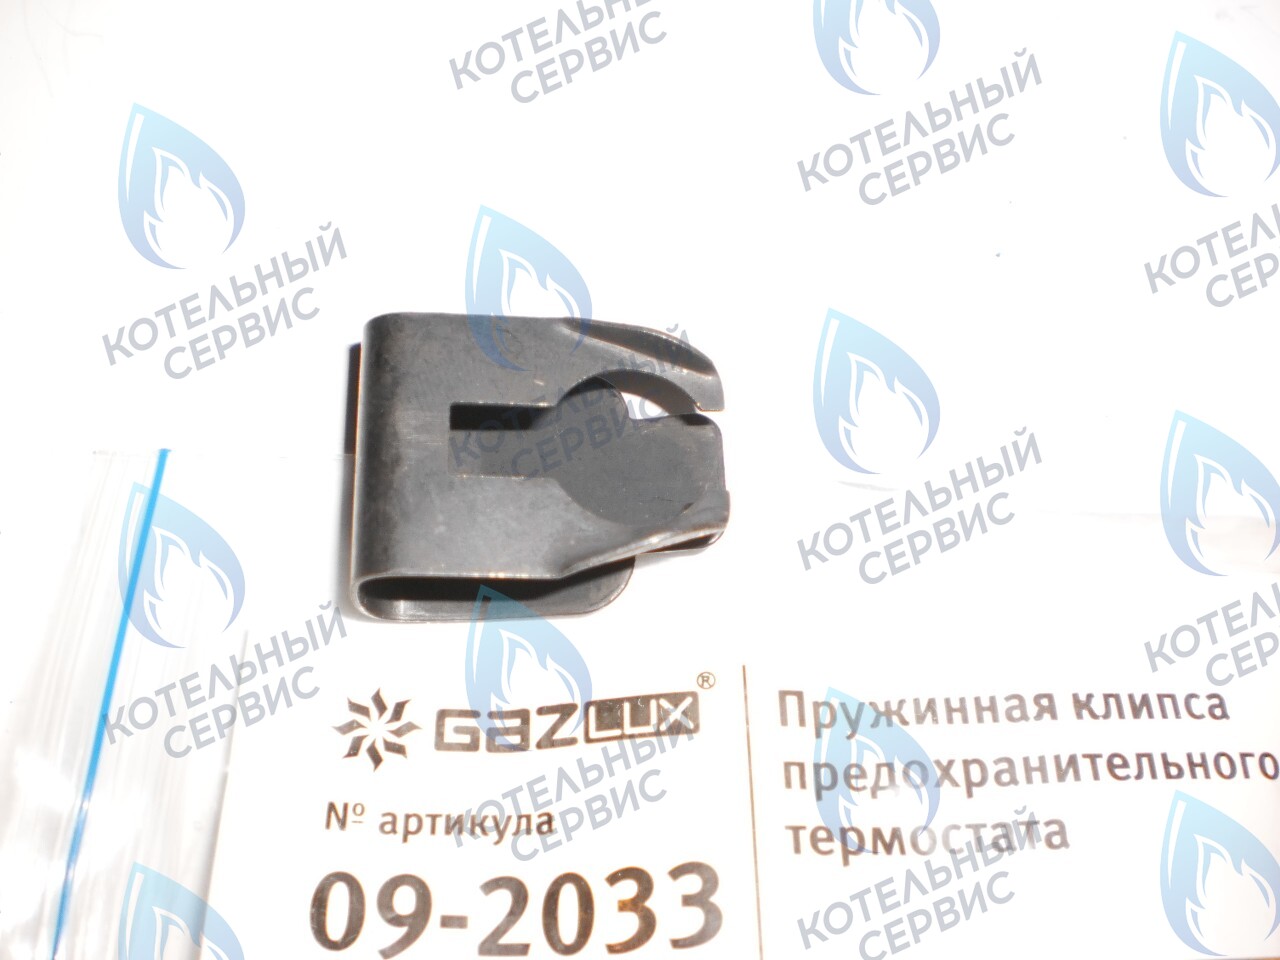 09-2033 Пружинная клипса предохранительного термостата (09-2033) GAZLUX в Барнауле